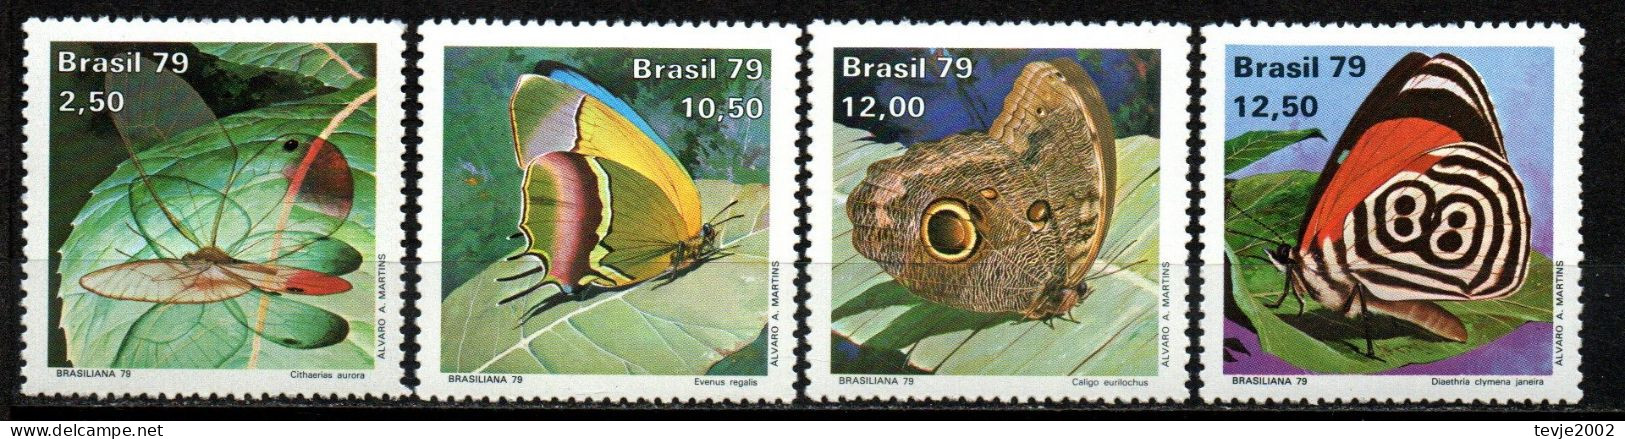 Brasilien 1979 - Mi.Nr. 1716 - 1719 - Postfrisch MNH - Tiere Animals Schmetterlinge Butterflies - Mariposas